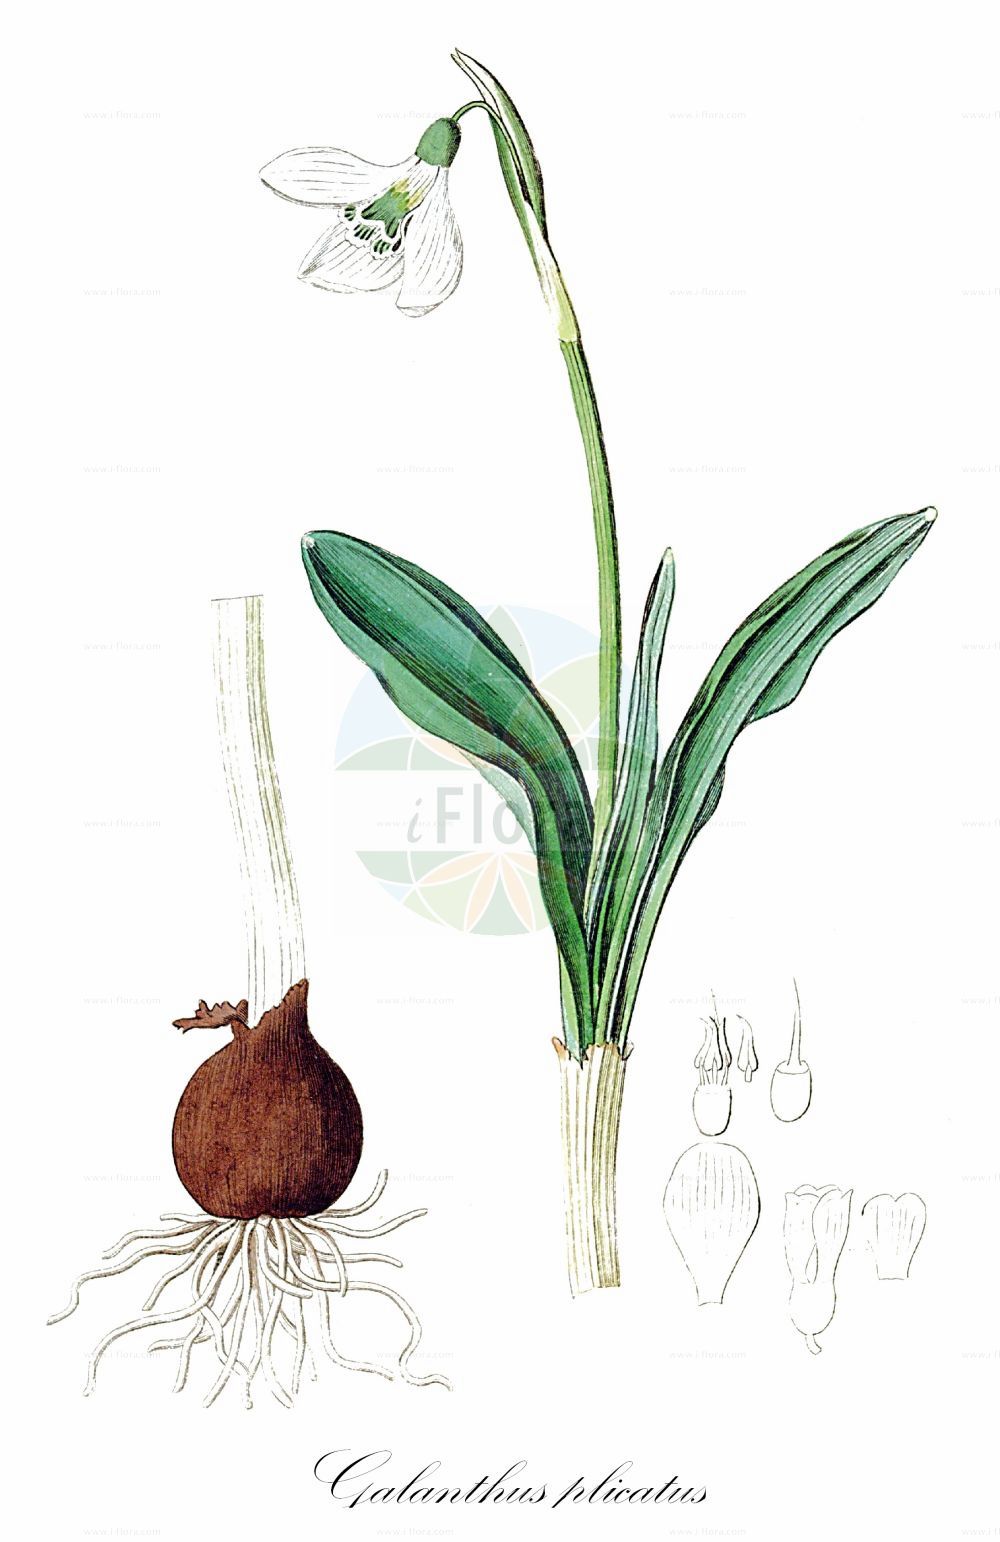 Historische Abbildung von Galanthus plicatus (Clusius-Schneeglöckchen - Pleated Snowdrop). Das Bild zeigt Blatt, Bluete, Frucht und Same. ---- Historical Drawing of Galanthus plicatus (Clusius-Schneeglöckchen - Pleated Snowdrop). The image is showing leaf, flower, fruit and seed.(Galanthus plicatus,Clusius-Schneeglöckchen,Pleated Snowdrop,Chianthemum plicatum,Galanthus plicatus,Clusius-Schneegloeckchen,Pleated Snowdrop,Galanthus,Schneeglöckchen,Snowdrop,Amaryllidaceae,Narzissengewächse,Amaryllis family,Blatt,Bluete,Frucht,Same,leaf,flower,fruit,seed,Botanical Register (1815-1828))